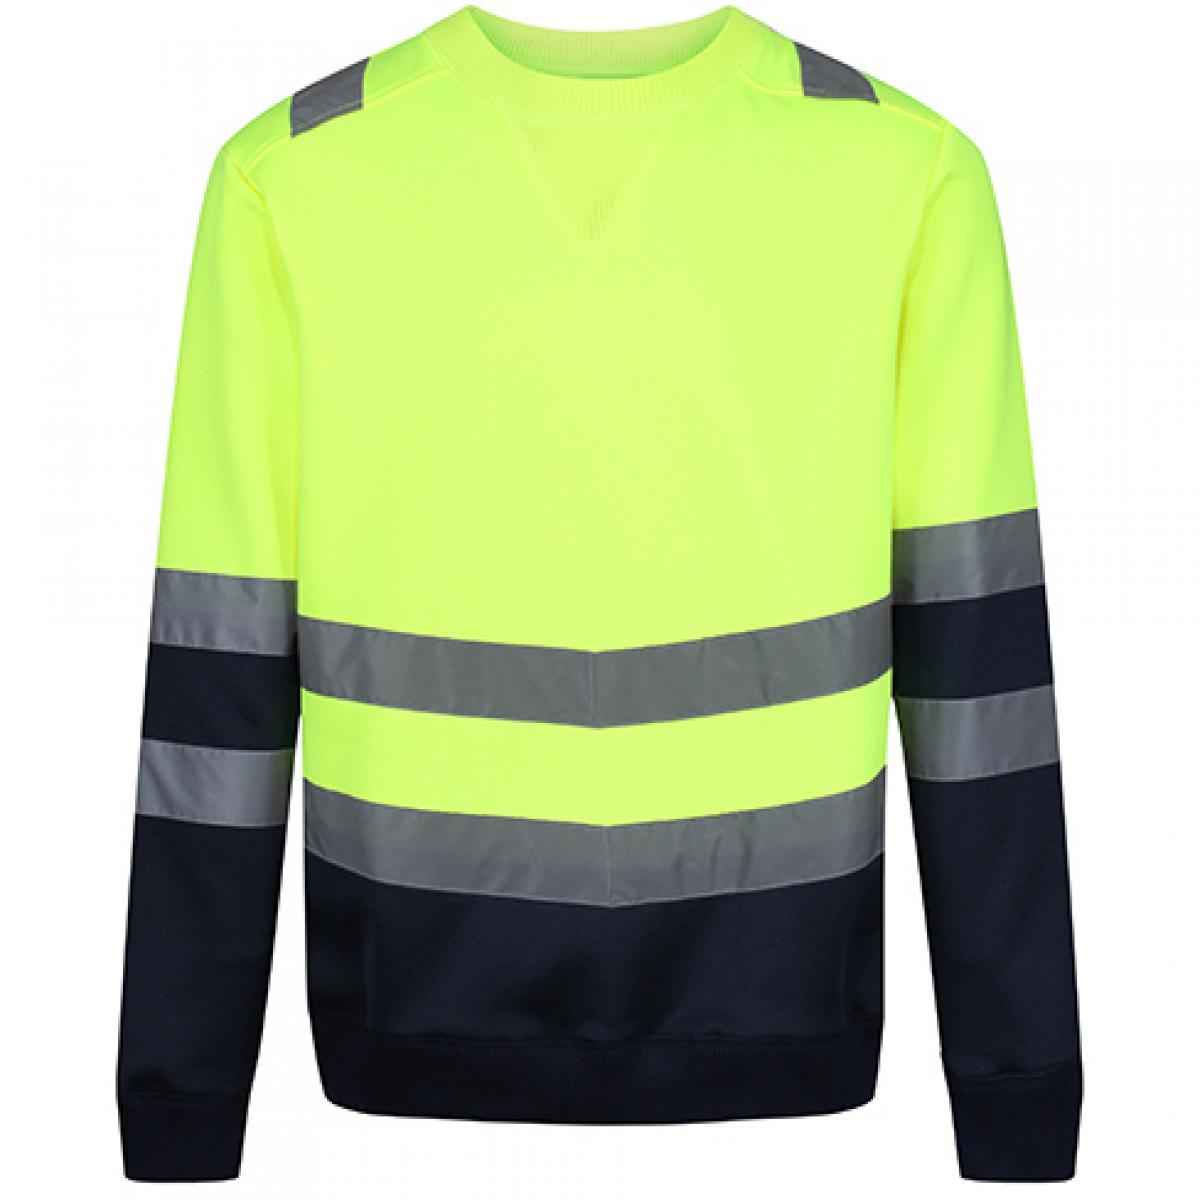 Hersteller: Regatta High Visibility Herstellernummer: TRF656 Artikelbezeichnung: Pro Hi Vis Sweat Top - Sicherheitssweatshirt Farbe: Yellow